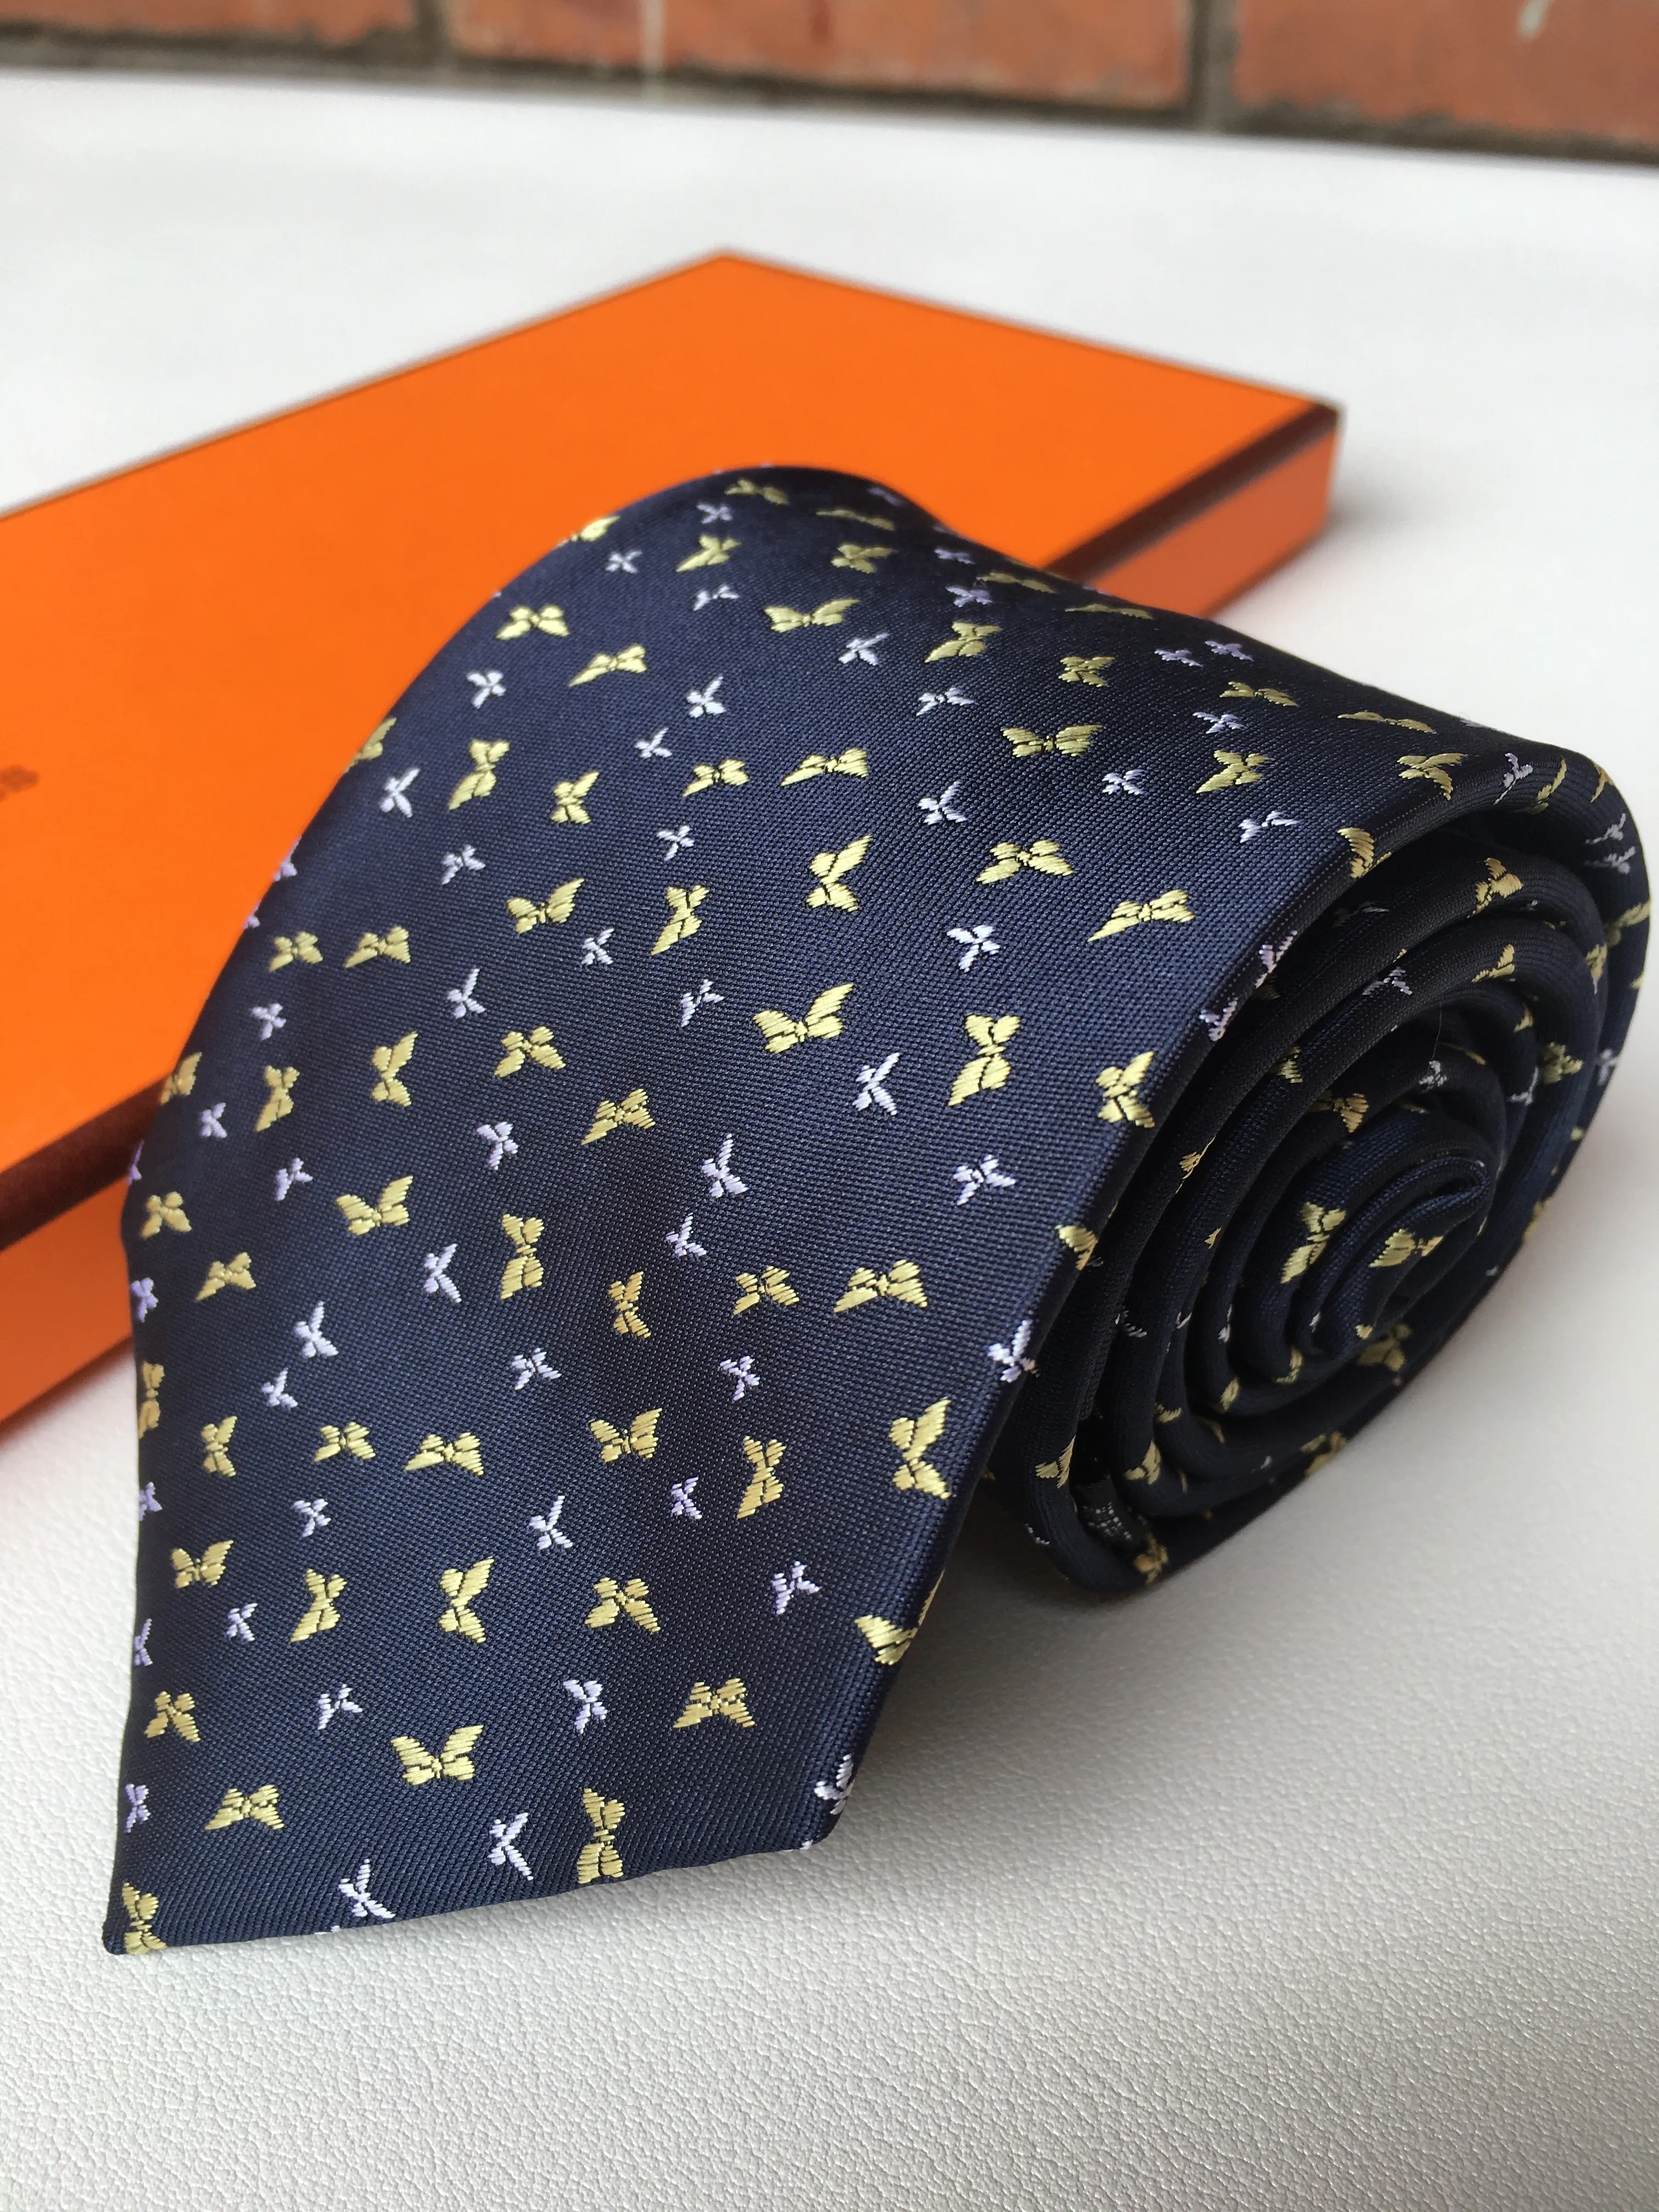 ビジネスデザイナーネクタイメンズシルクネクタイ高品質 Cravatta Uomo 男性ビジネスネクタイ文字刺繍 Krawatte ボックス付き高級ネクタイ